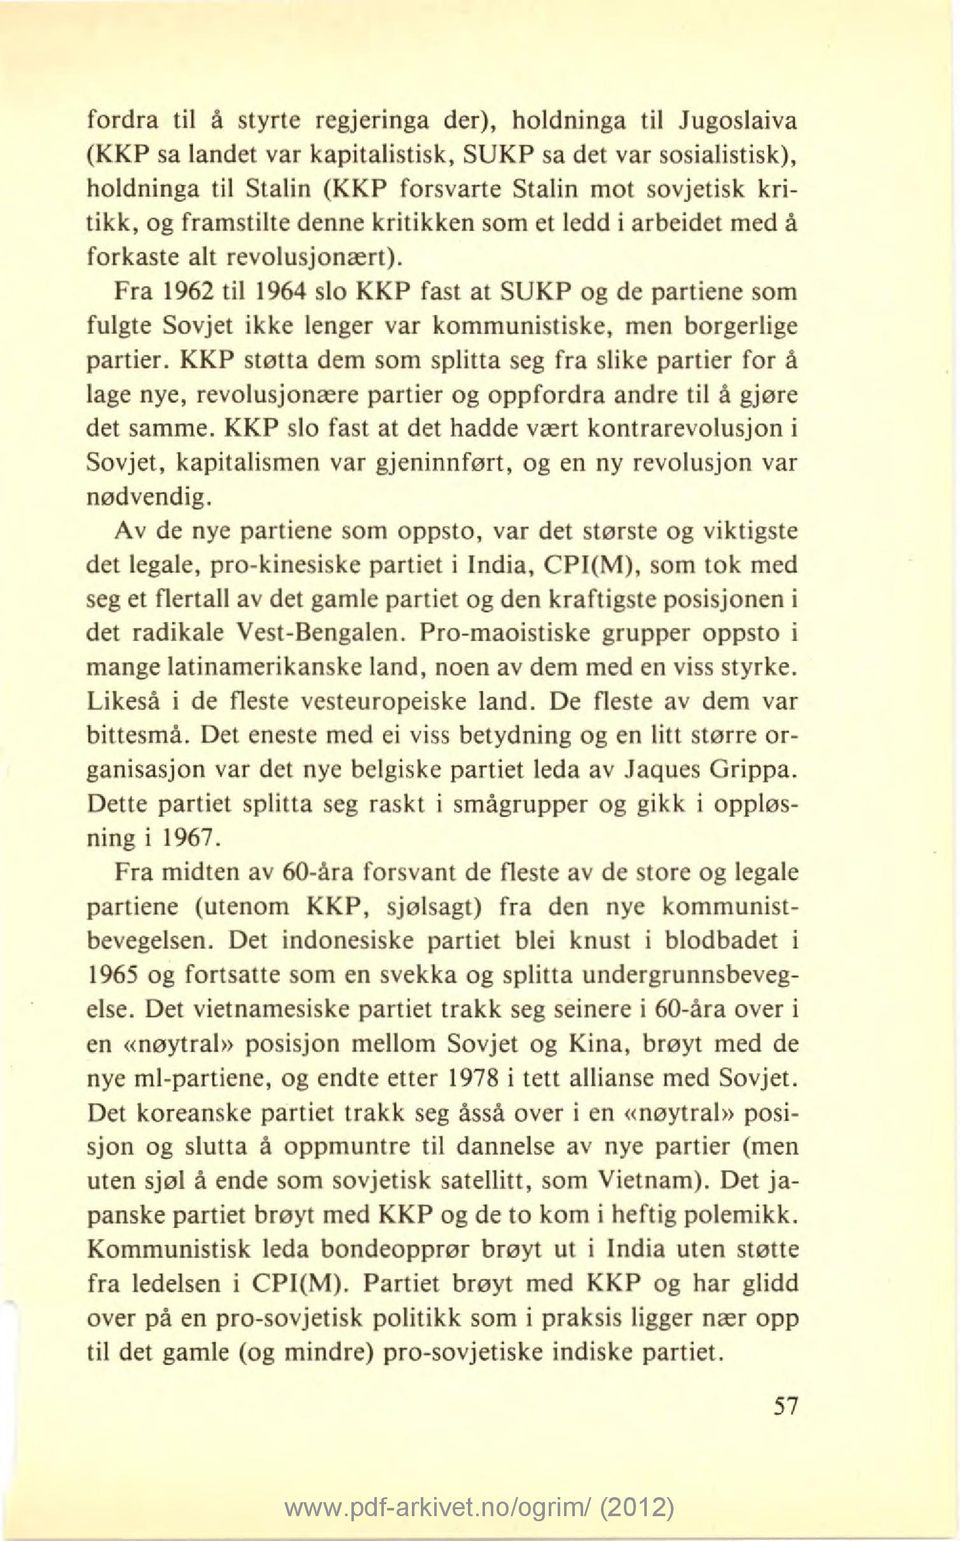 Fra 1962 til 1964 slo KKP fast at SUKP og de partiene som fulgte Sovjet ikke lenger var kommunistiske, men borgerlige partier.